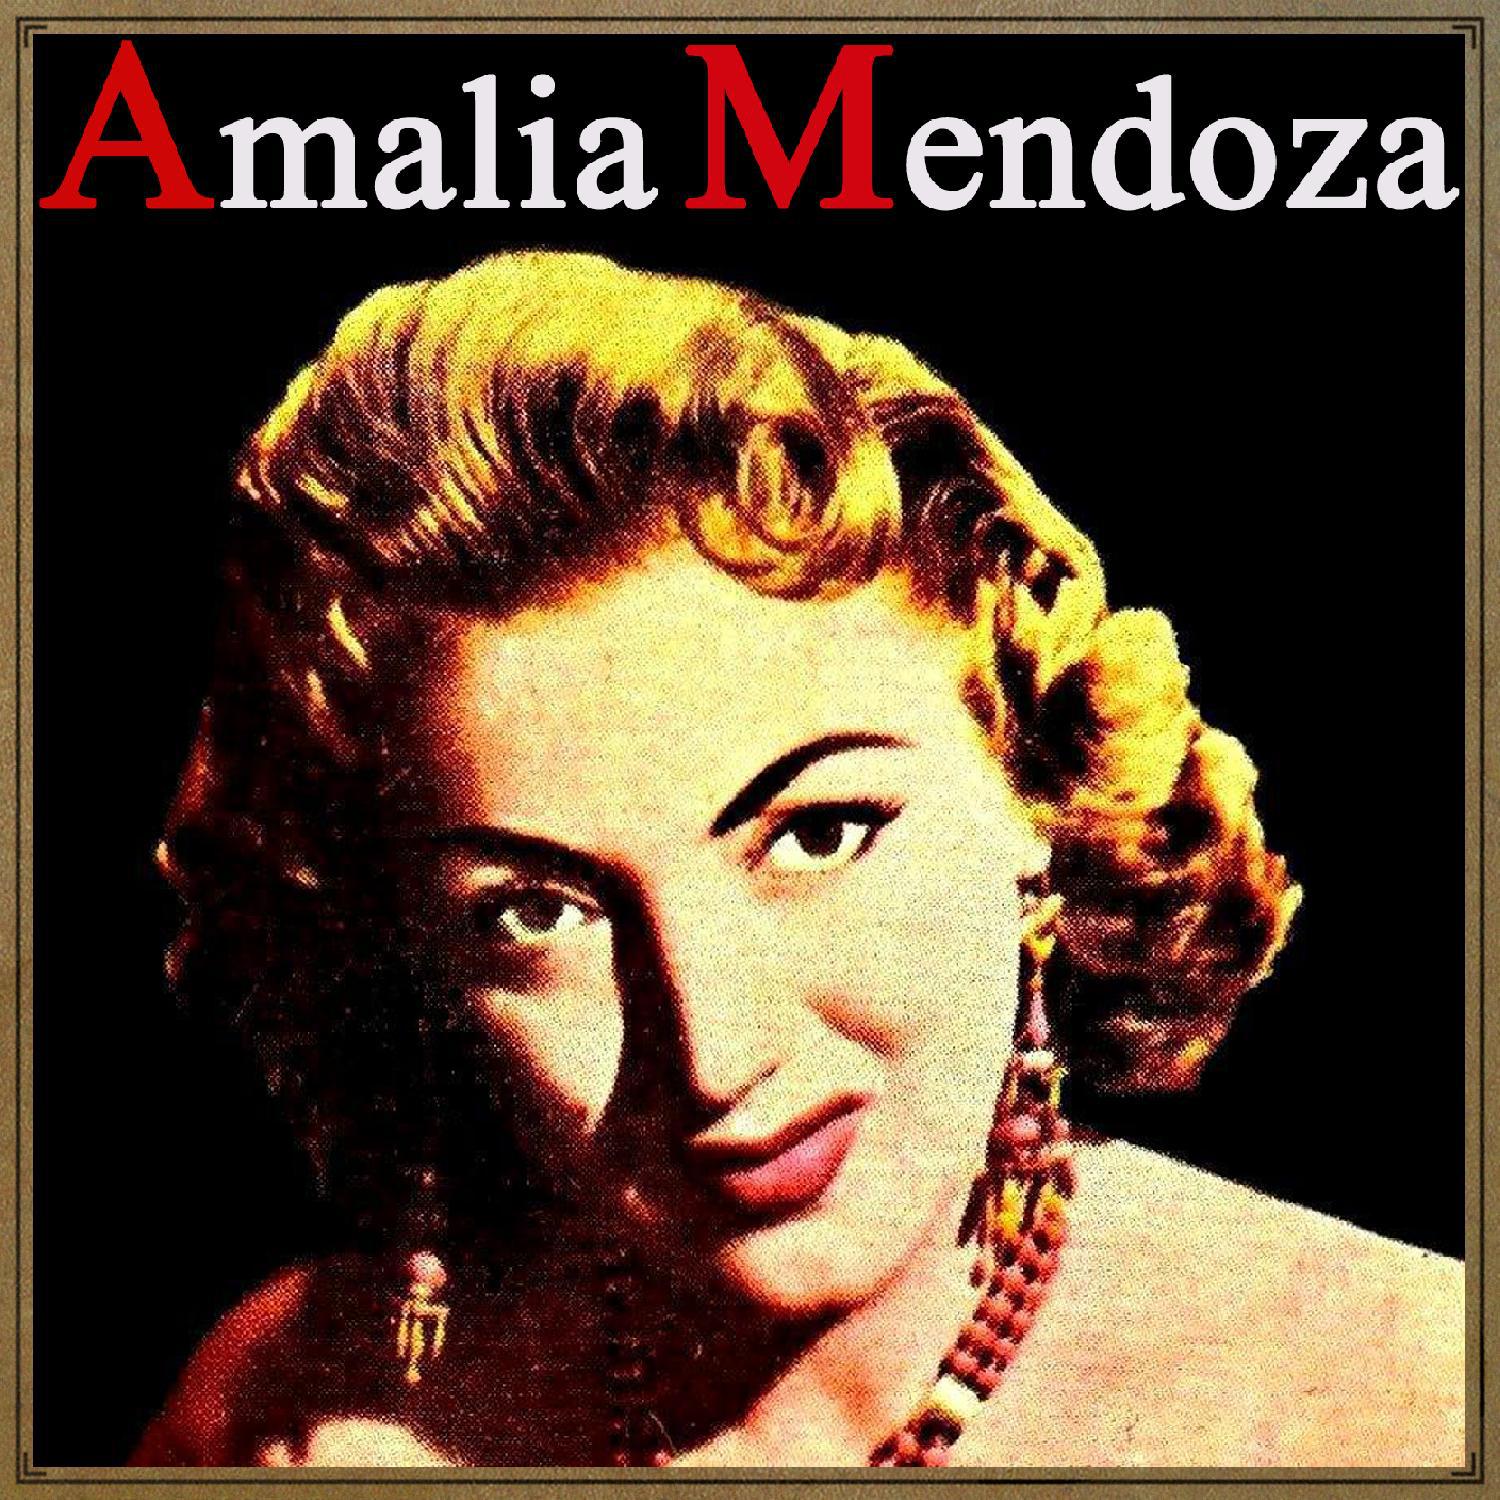 Vintage Music No. 133 - LP: Amalia Mendoza, "La Tariacuri" .